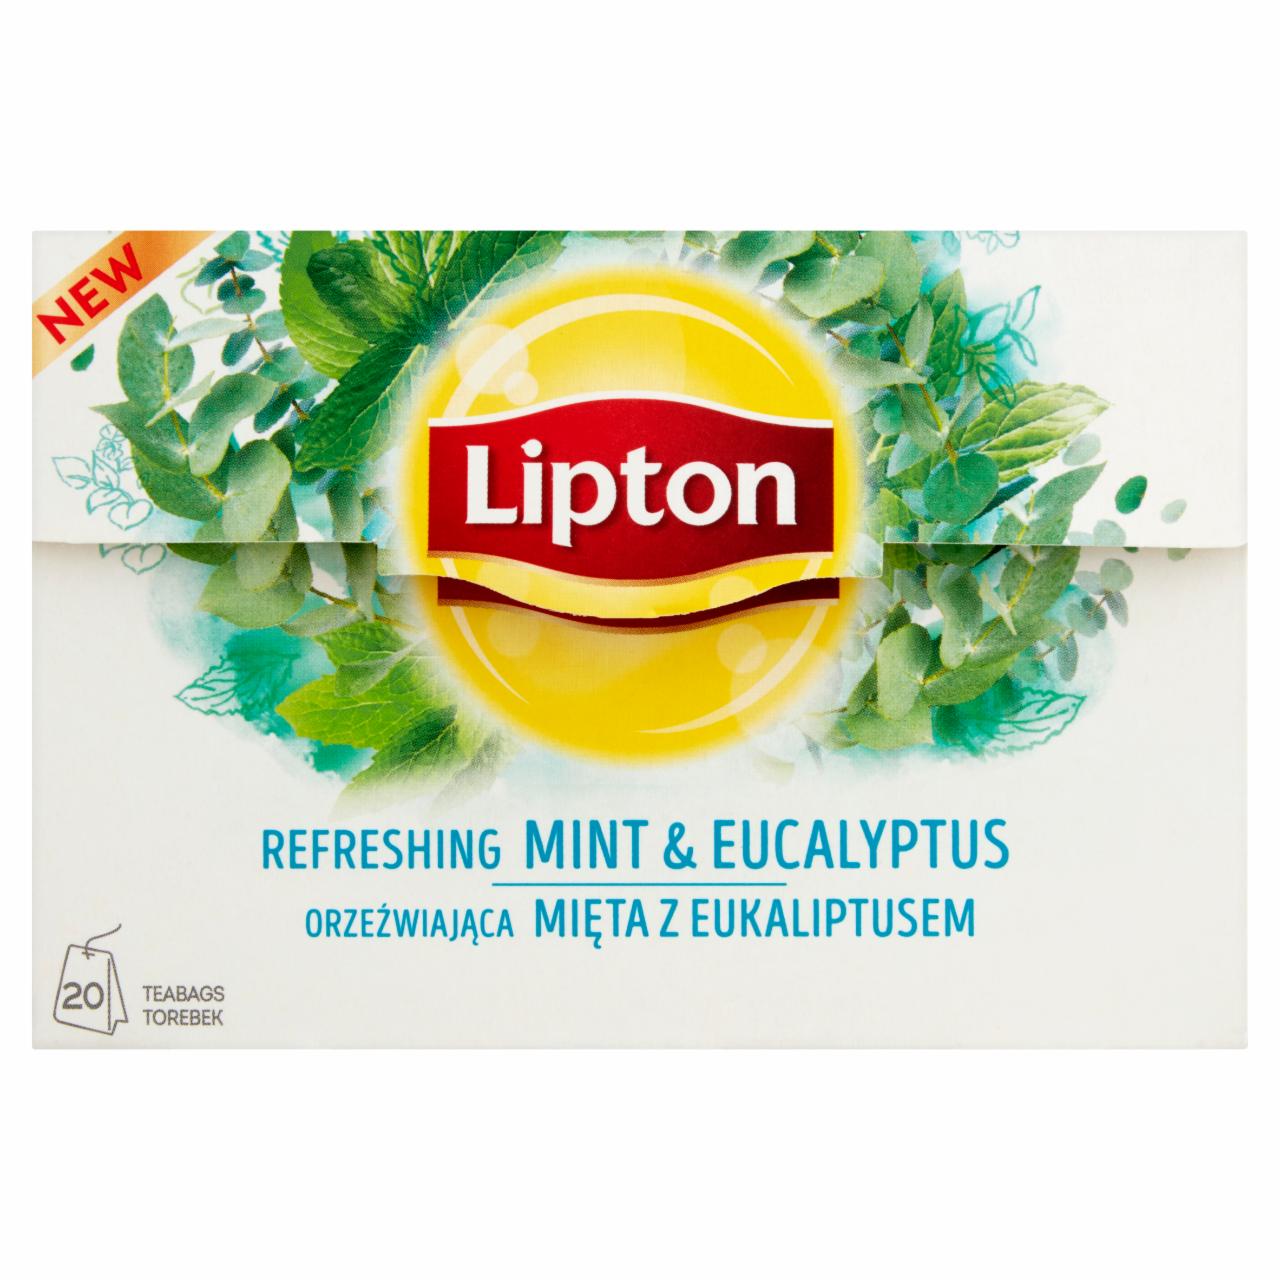 Zdjęcia - Lipton Orzeźwiająca mięta z eukaliptusem Herbatka ziołowa 26 g (20 torebek)